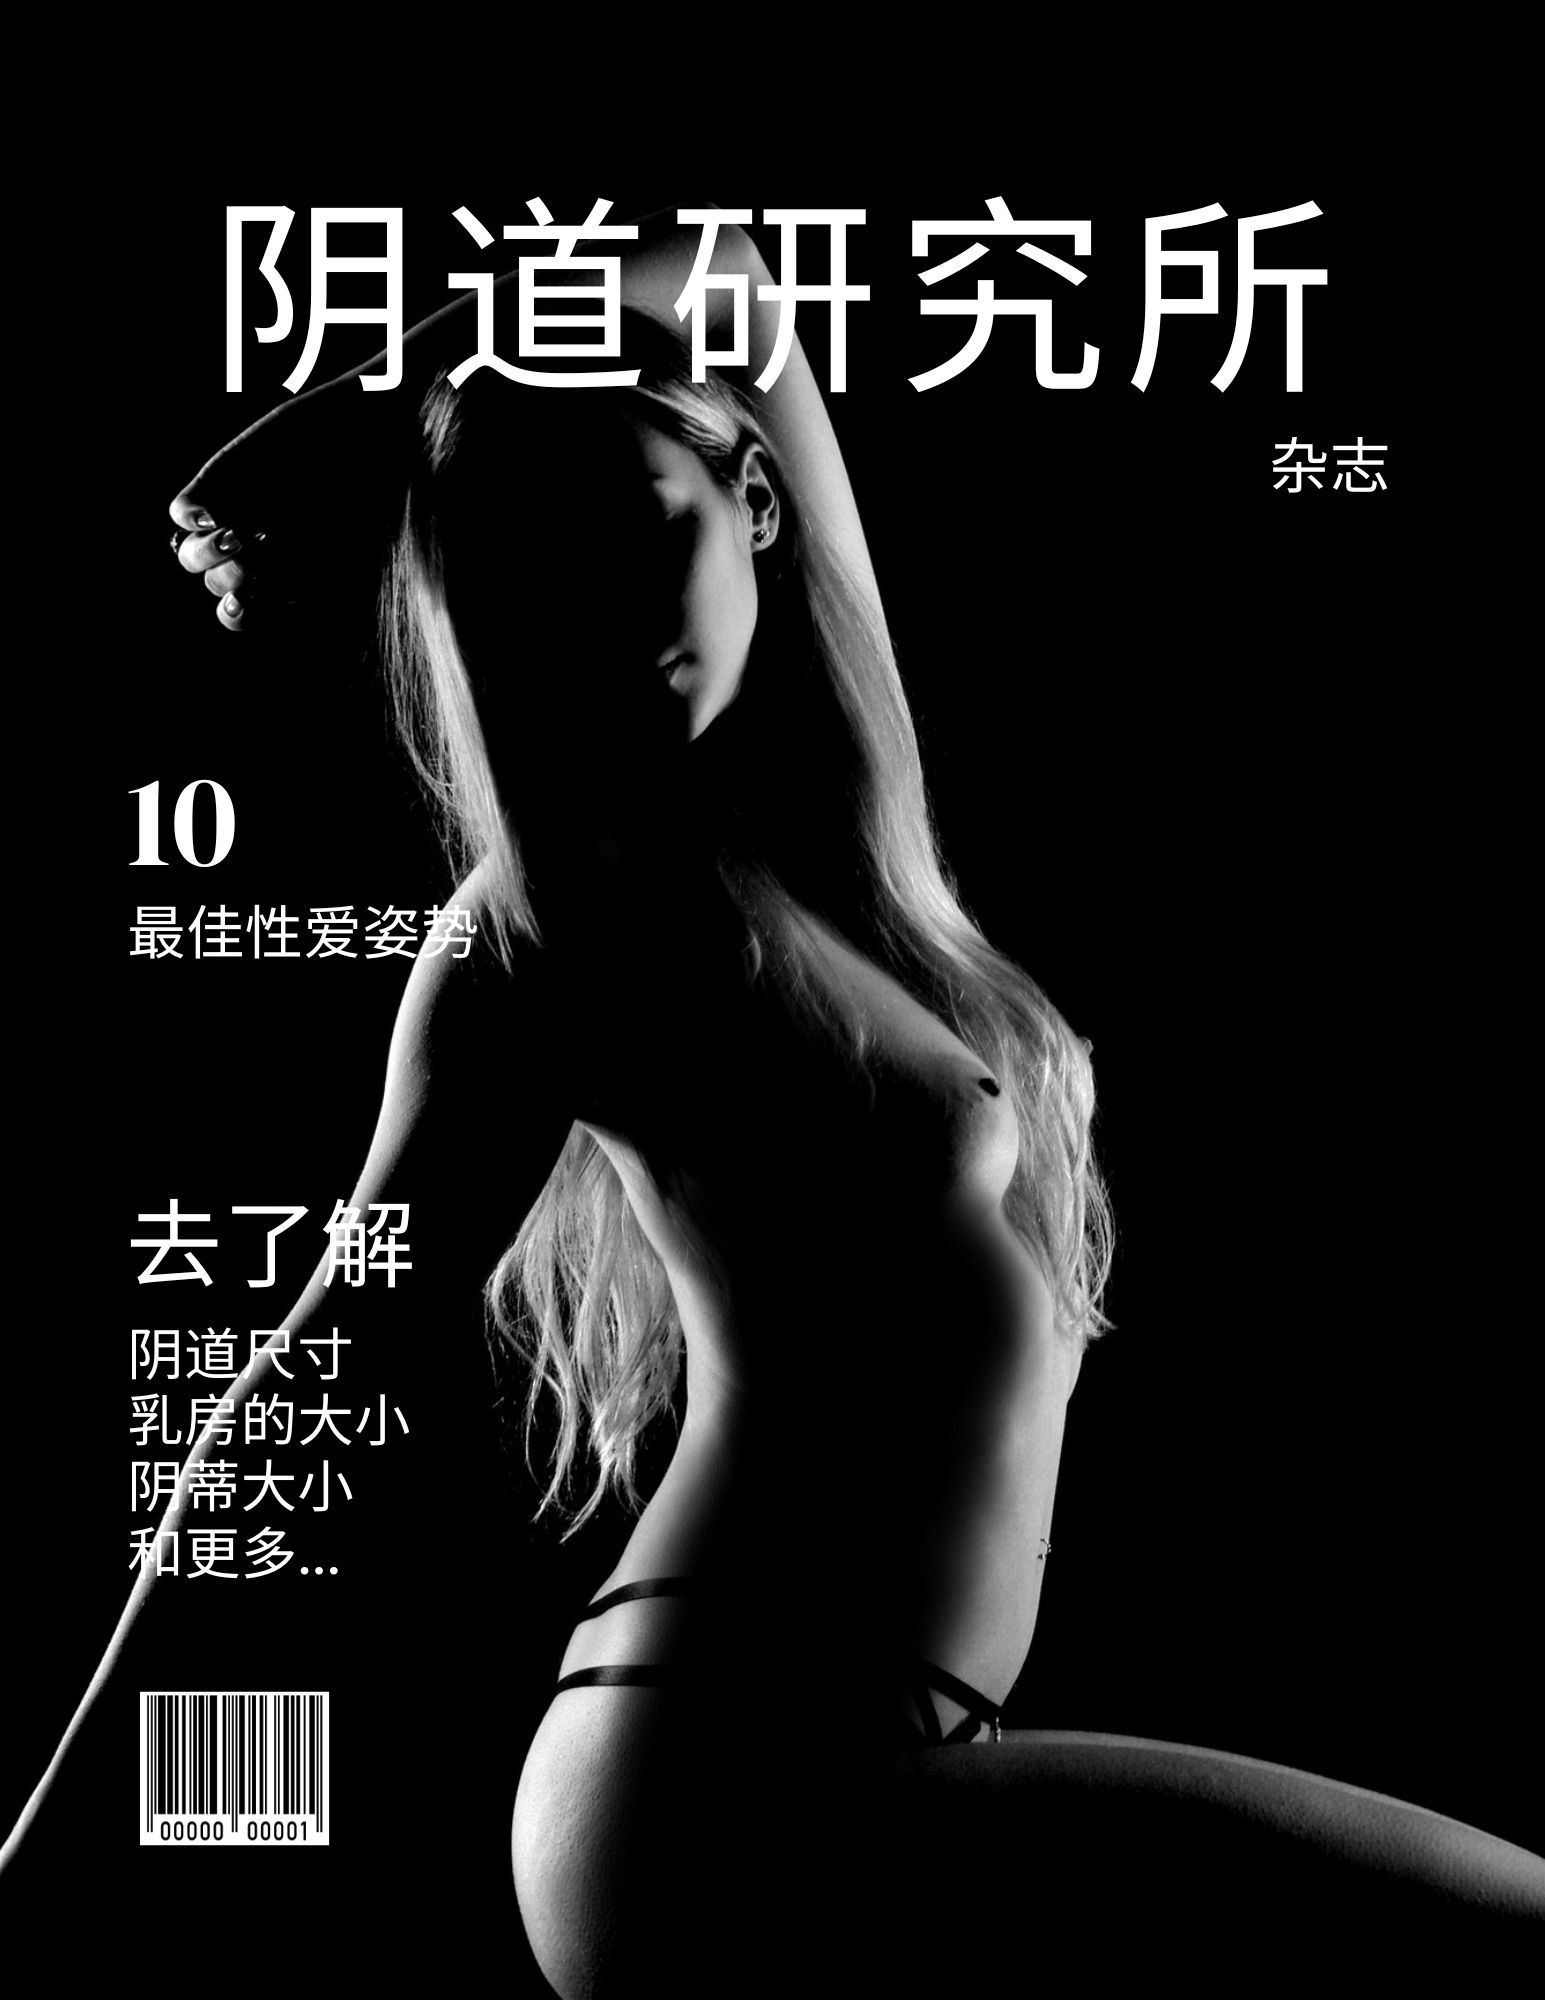 阴道研究所杂志 女性 10 种最佳性爱姿势